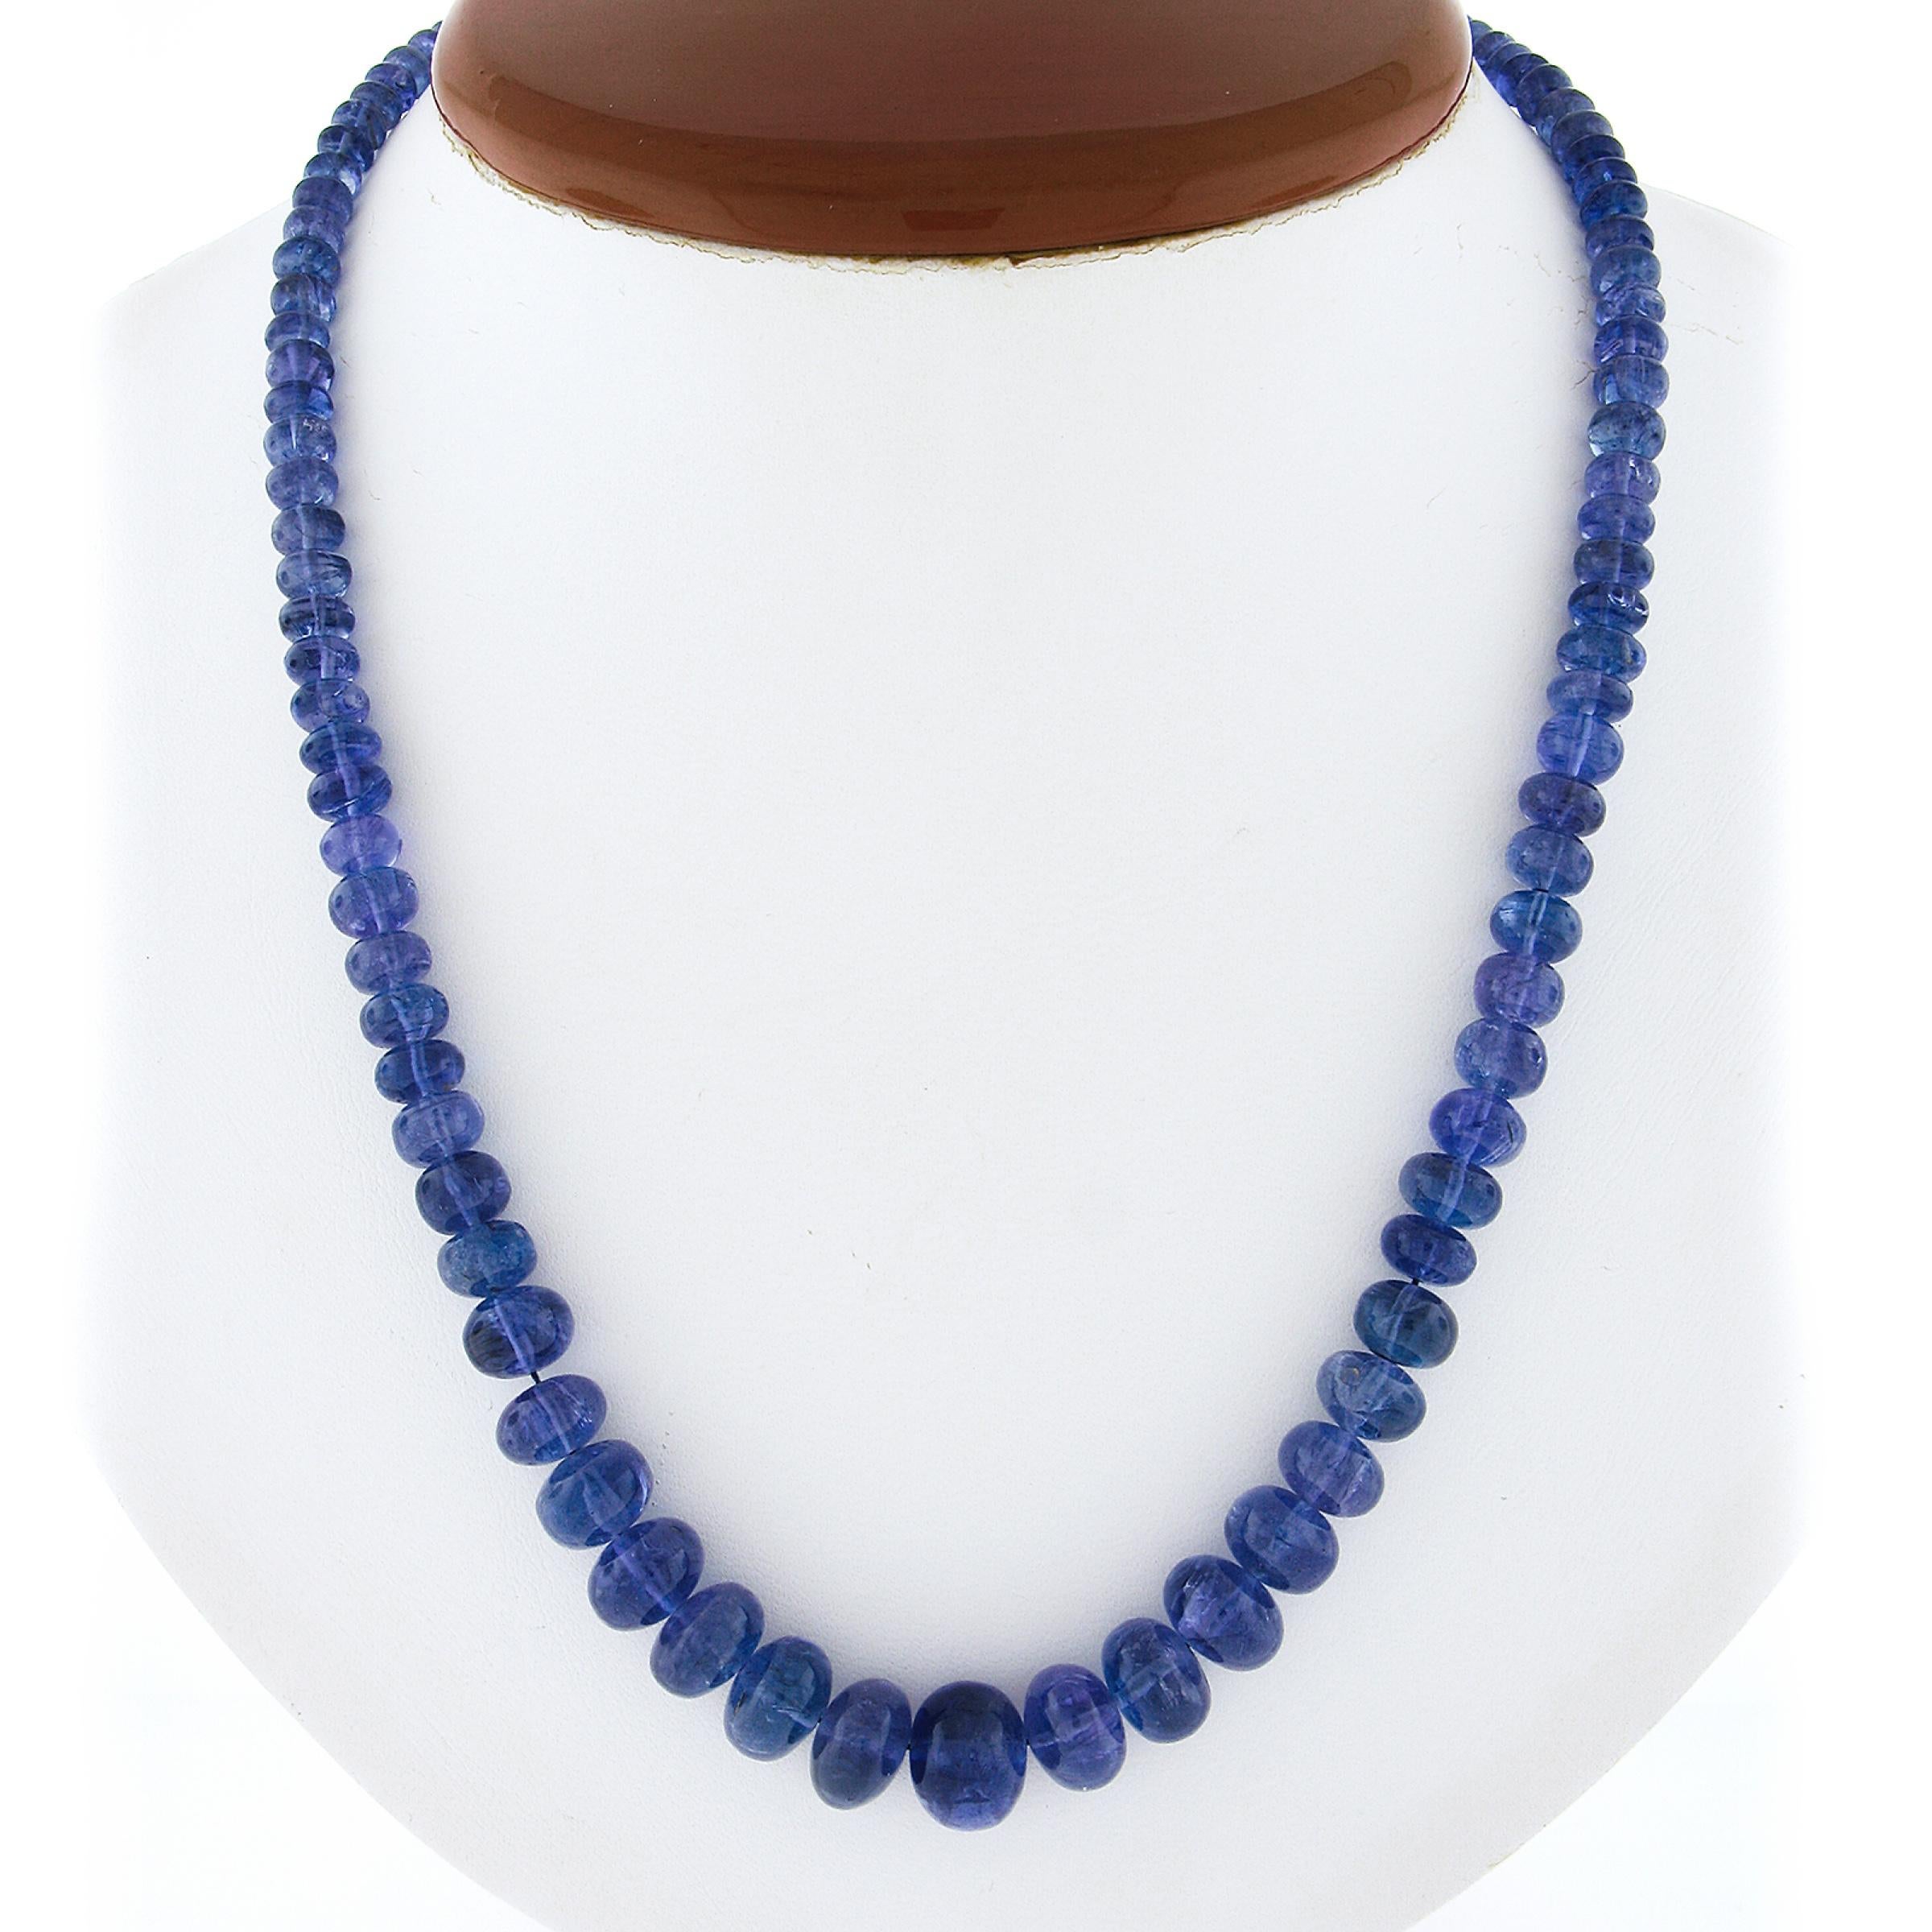 --Töne:--
101 Natürlicher echter Tansanit - Rondelle Perlenform - aufgereihtes Set - blau-violette Farbe - 3,6mm bis 10,3mm genau, zertifiziert
** Vollständige Informationen siehe unten unter 